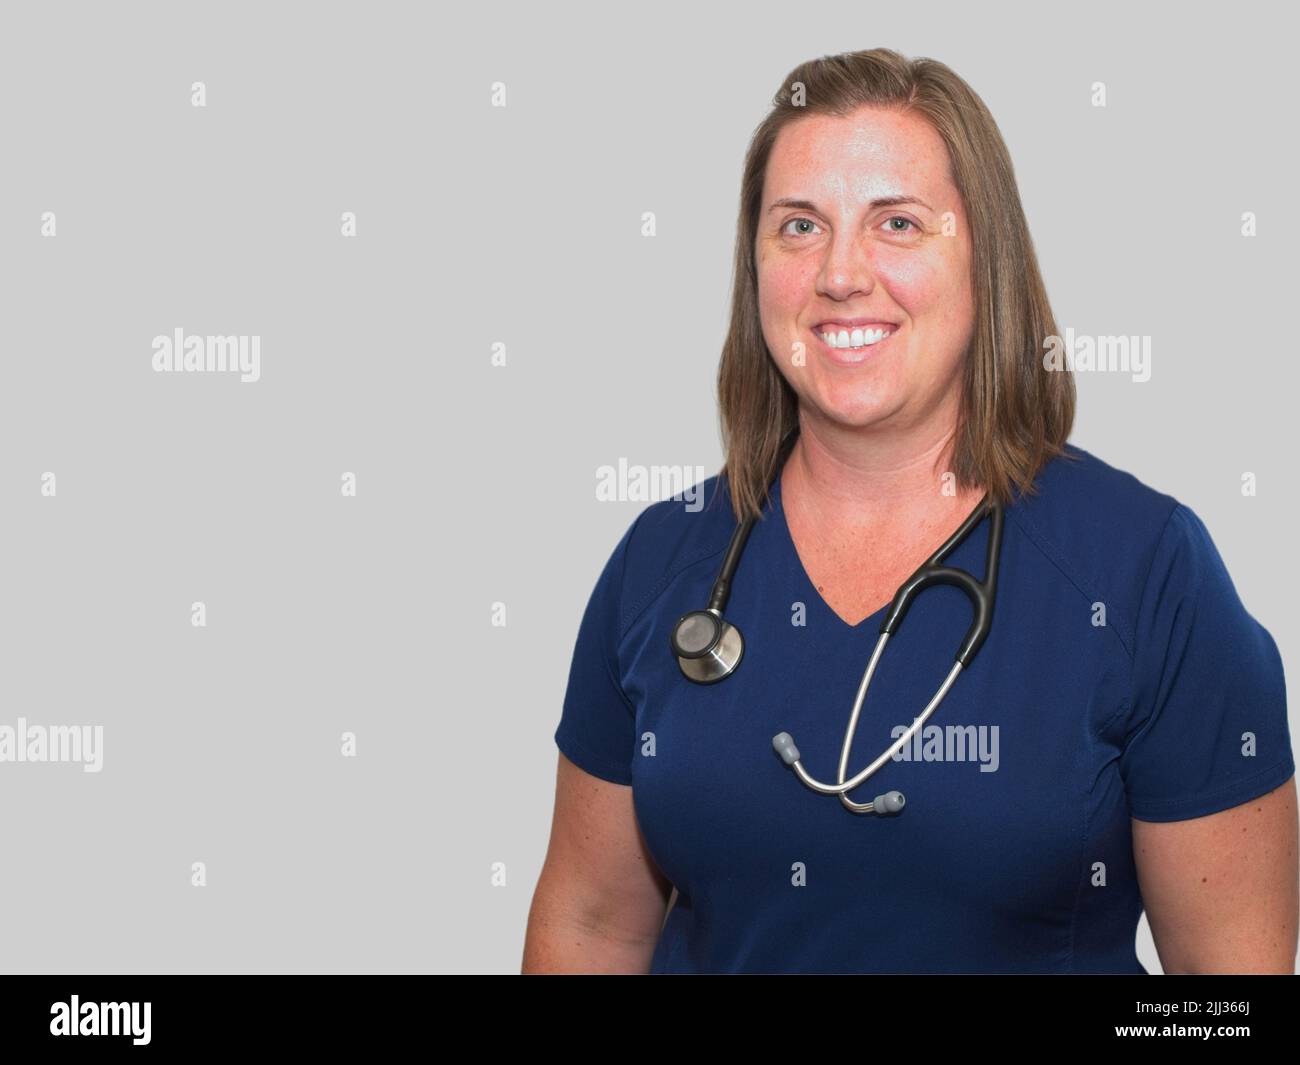 Der medizinische Beruf ist nicht einfach, aber er ist sicherlich lohnend für diese lächelnde Krankenschwester Praktikerin. Stockfoto